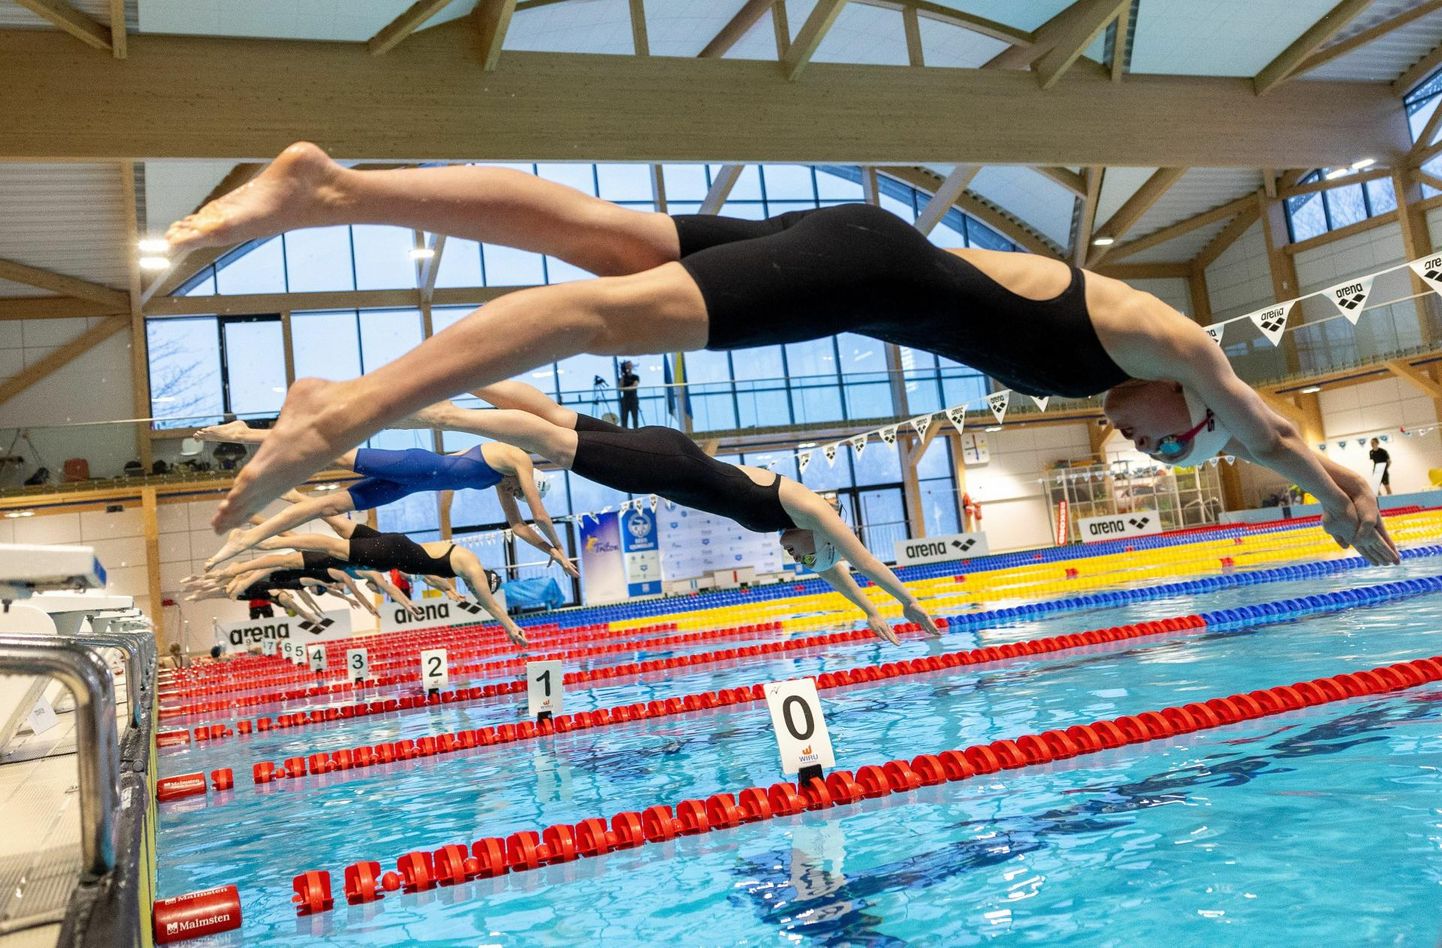 Клуб плавания "Актив" отказался от организации чемпионата Эстонии.